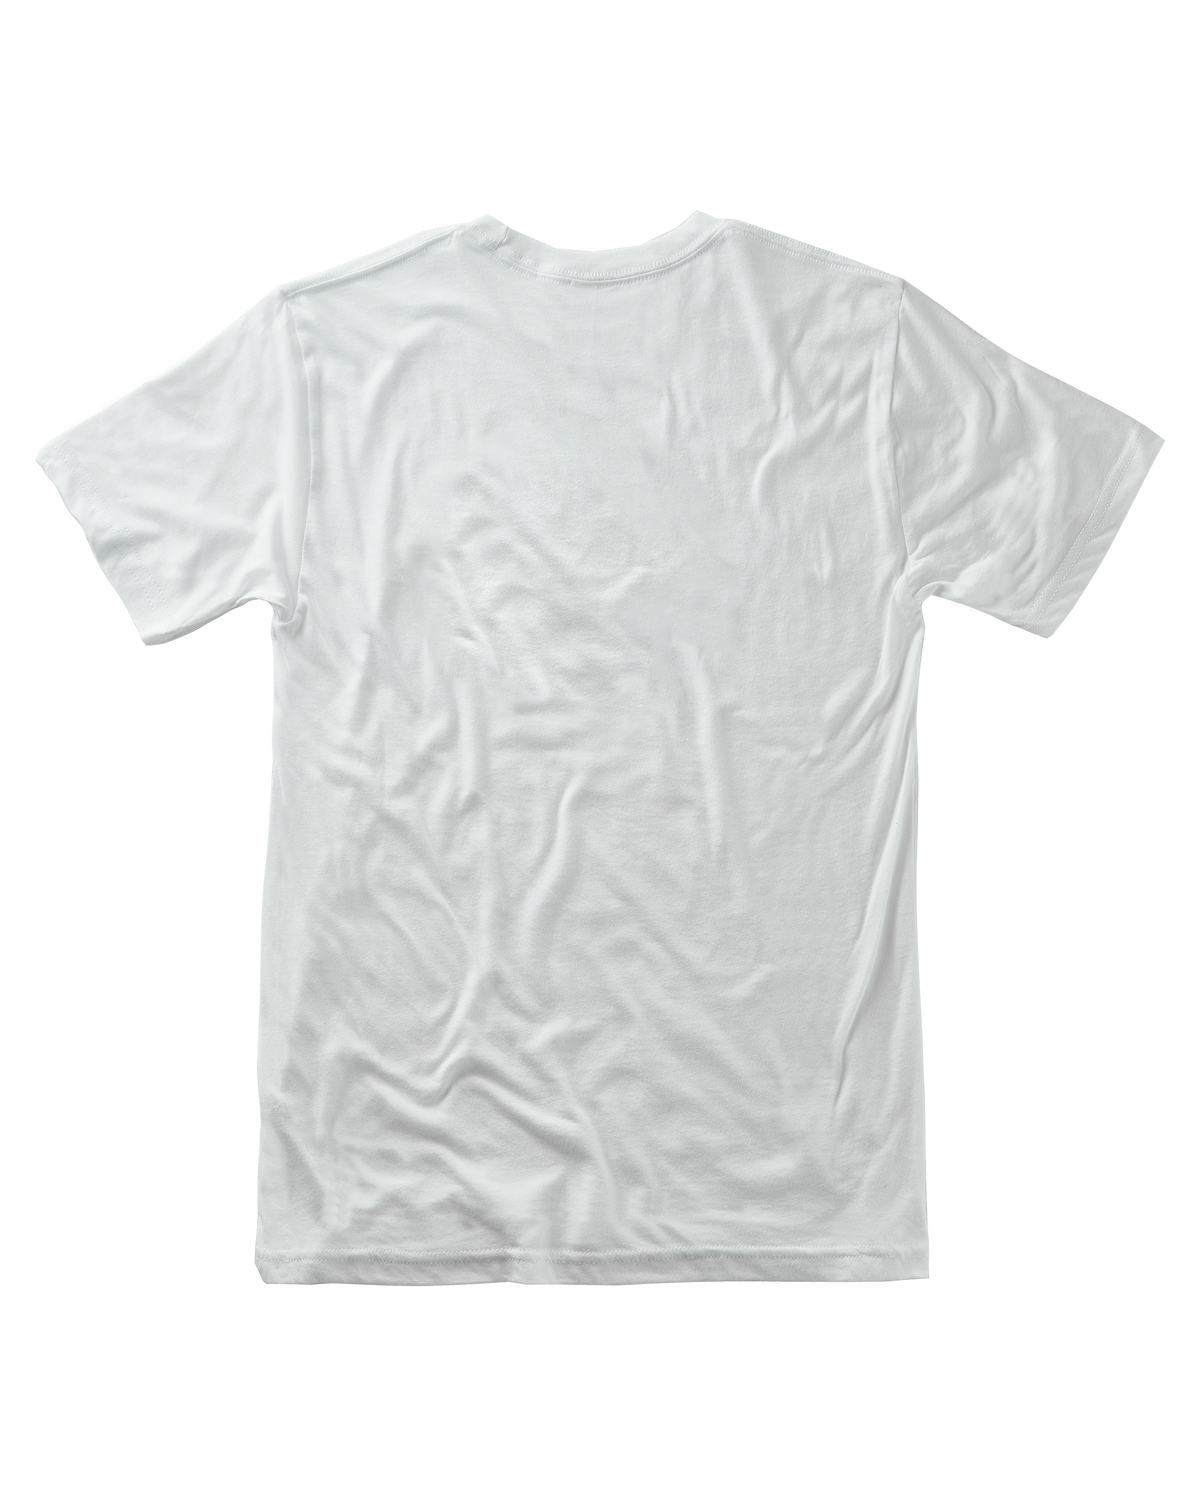 An Seafoam On White T-Shirt back view.